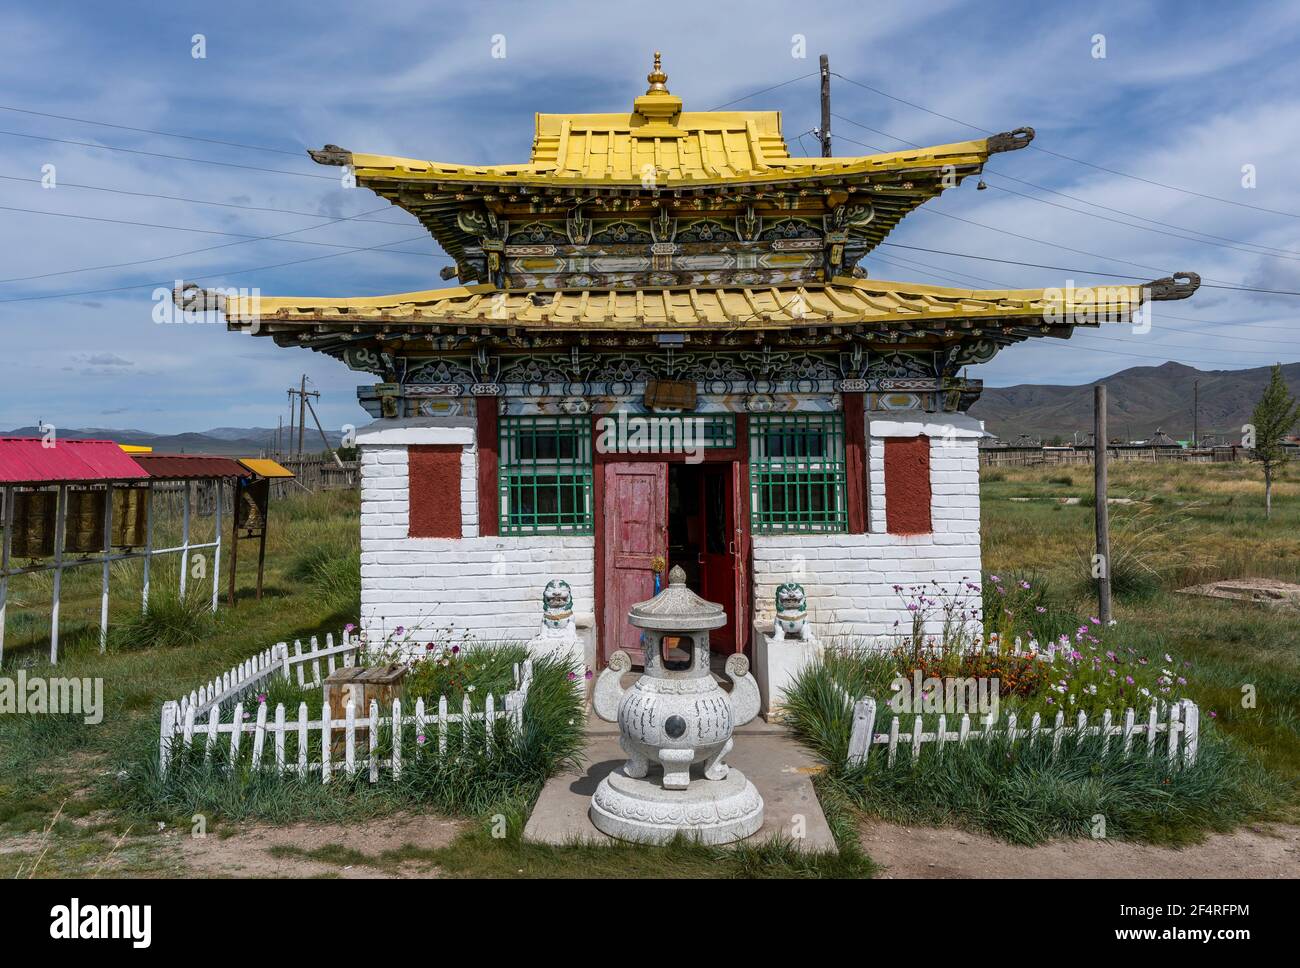 Mörön, Mongolei - 17. August 2019: Buddhistischer Tempel aus weißem Stein mit gelbem Dach und Statuen in Mörön, Mongolei. Stockfoto